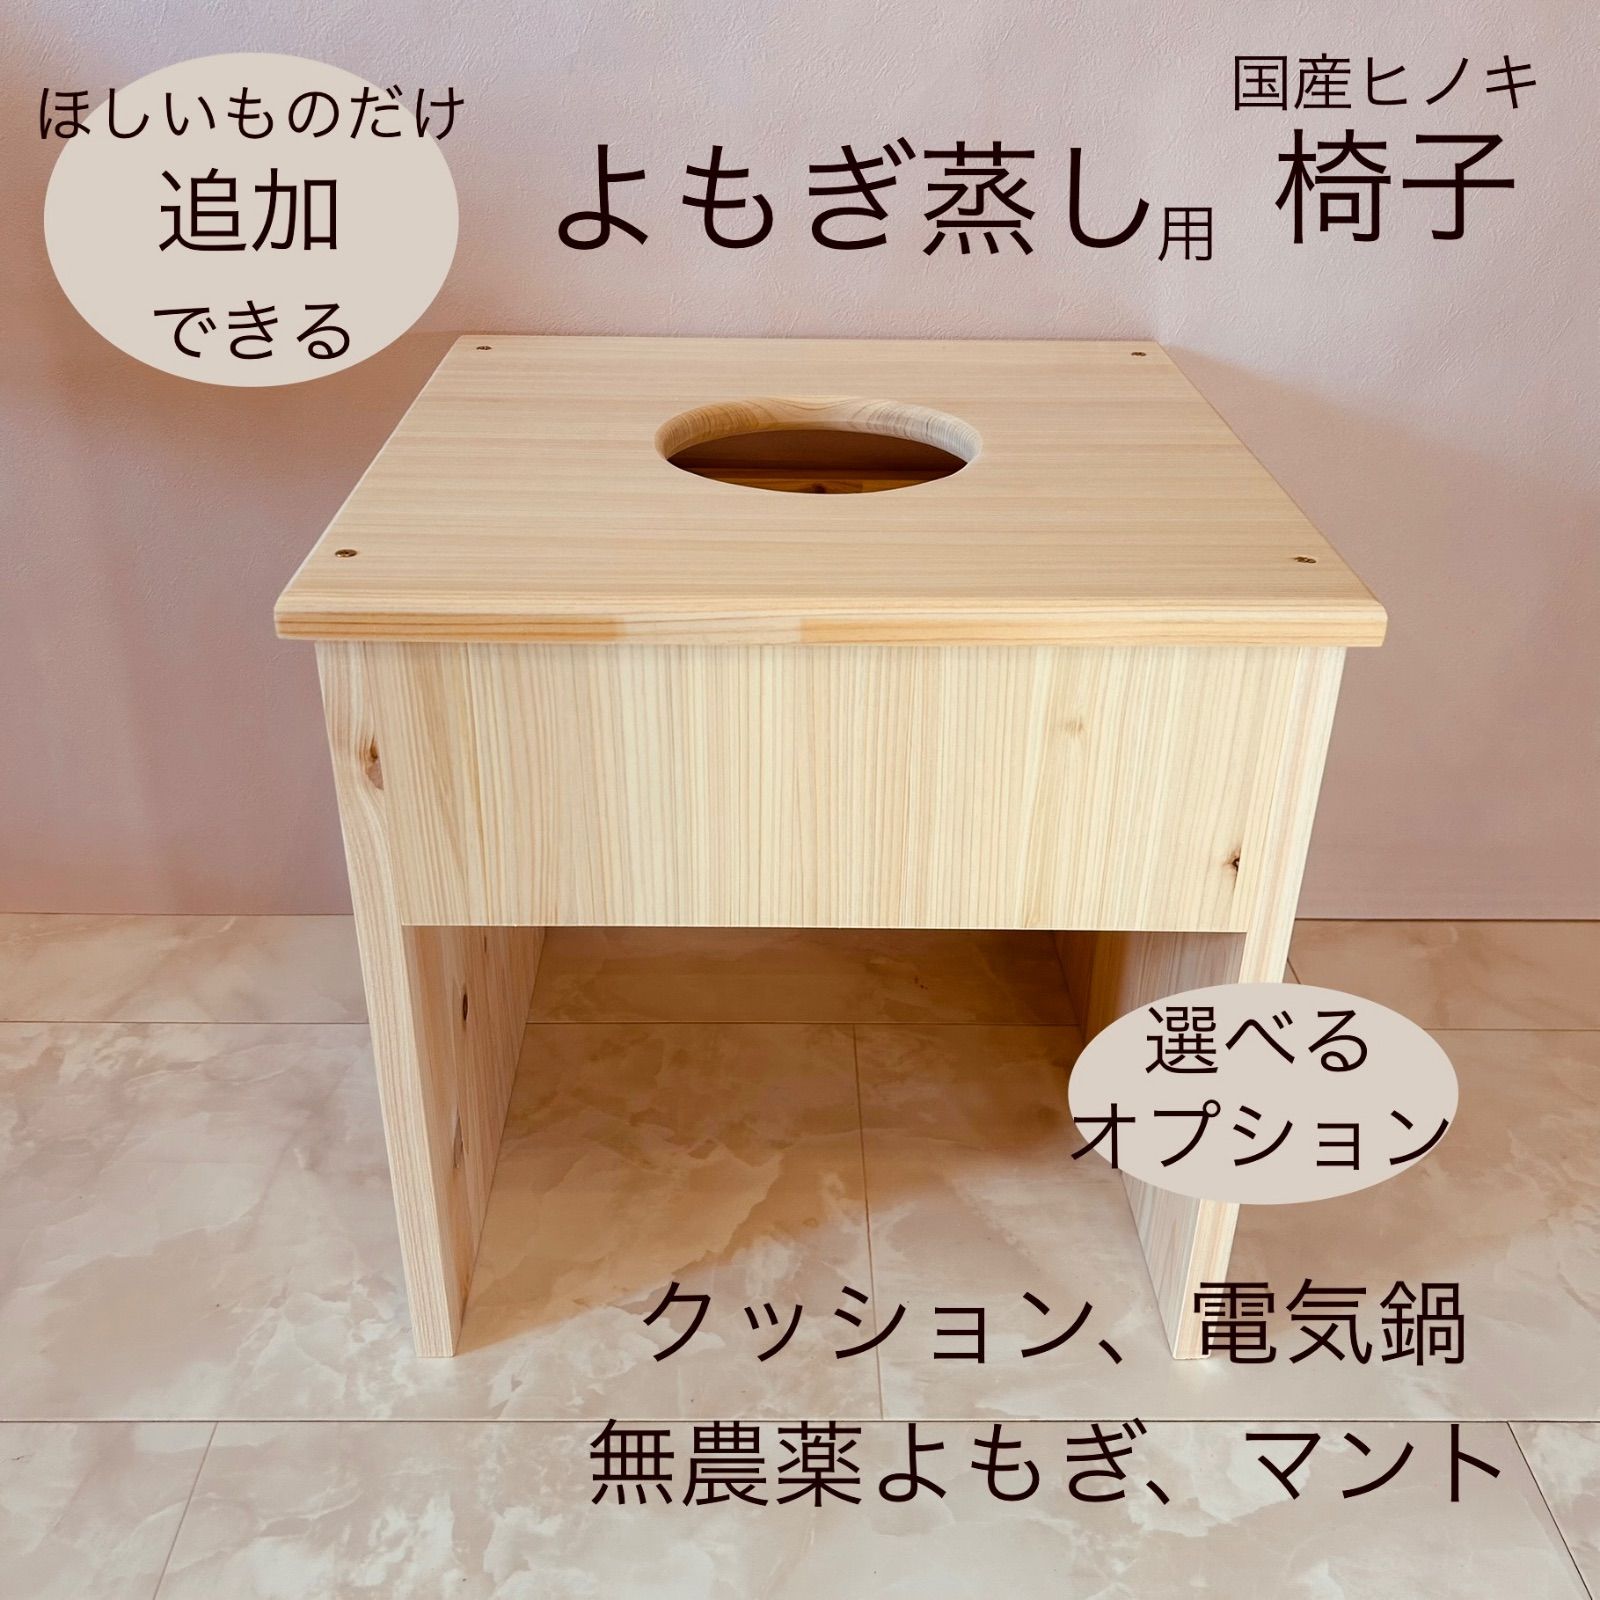 ➇袖ありマント☆国産ヒノキ椅子のよもぎ蒸しセット - 健康用品